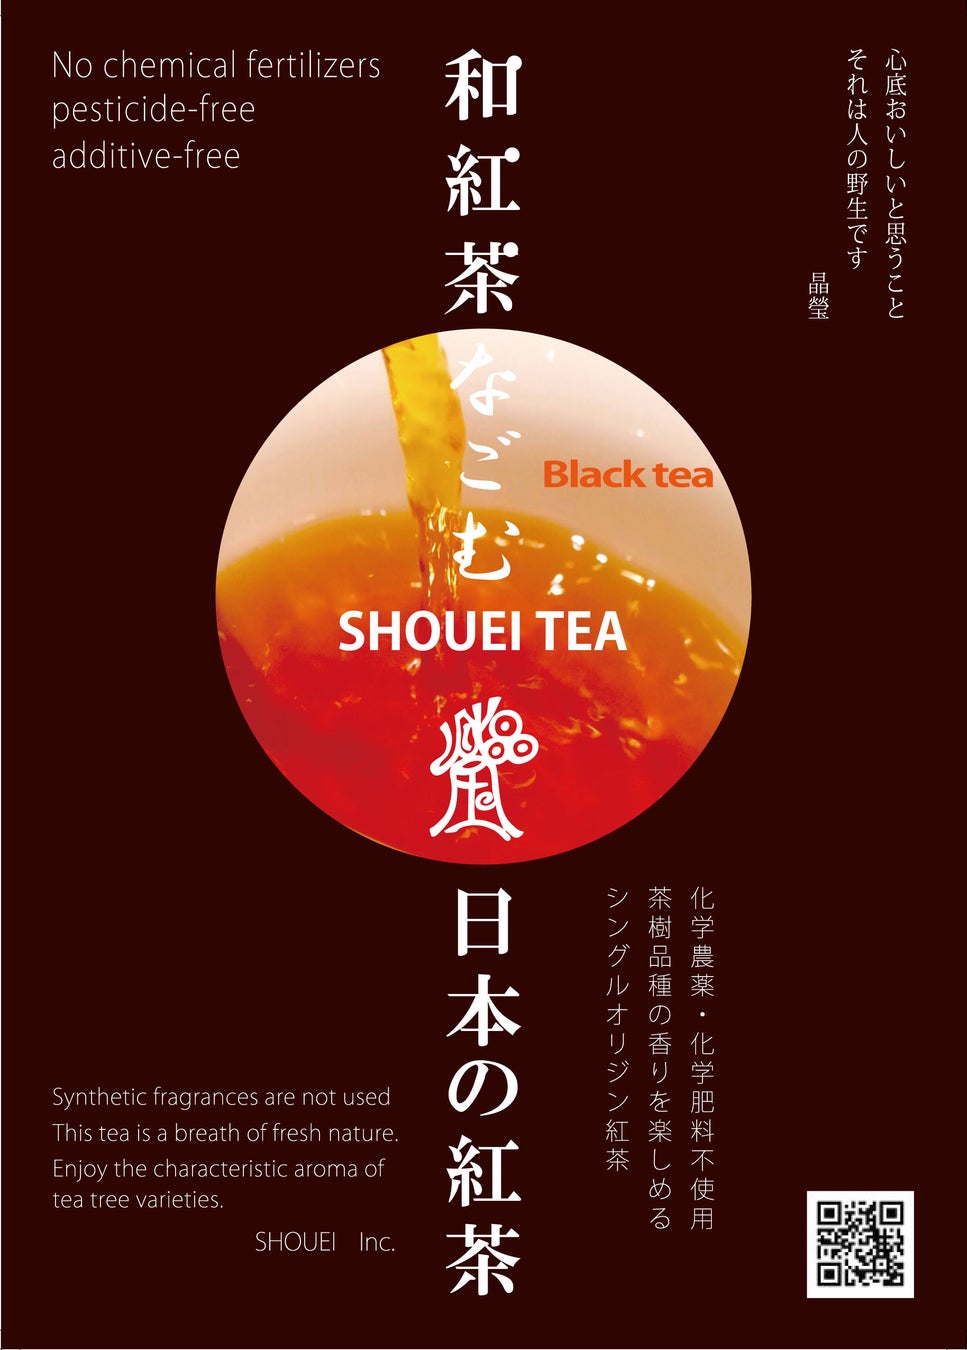 【吉祥寺でイベント】4月15日1日限りのリアルイベント！SHOUEI TEAの「和紅茶フェア」開催いたします。化学肥料農薬不使用日本の紅茶をご紹介します。紅茶ミニ講座も同時開催いたします。